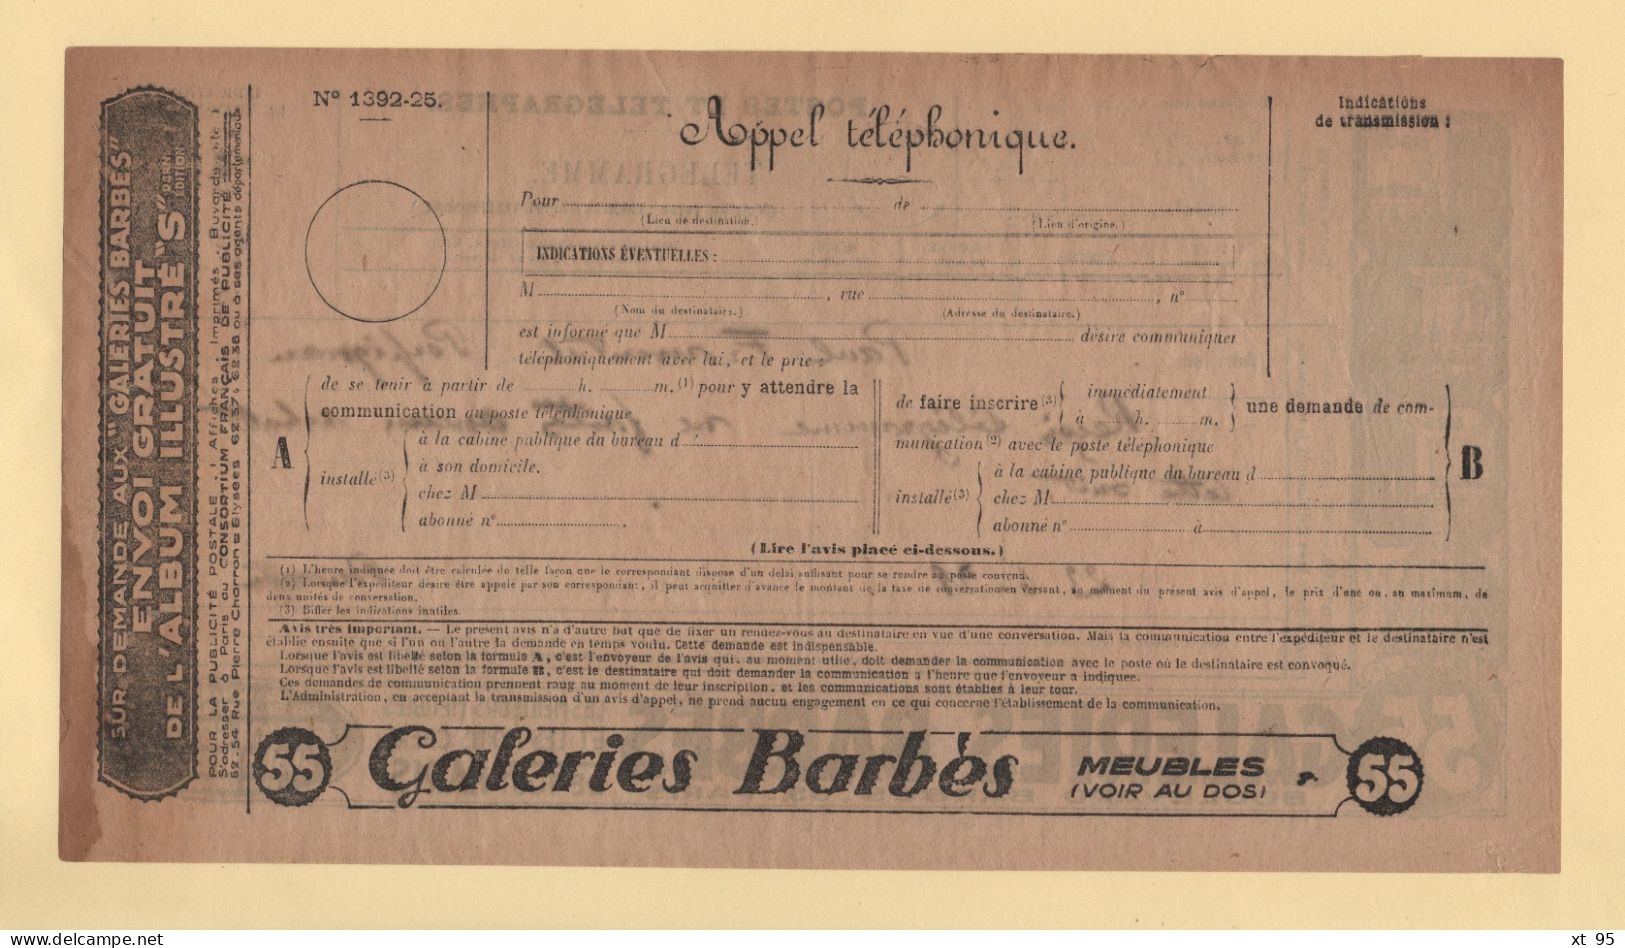 Telegramme Illustre - Galeries Barbes - 1928 - Perpignan - Telegraphie Und Telefon